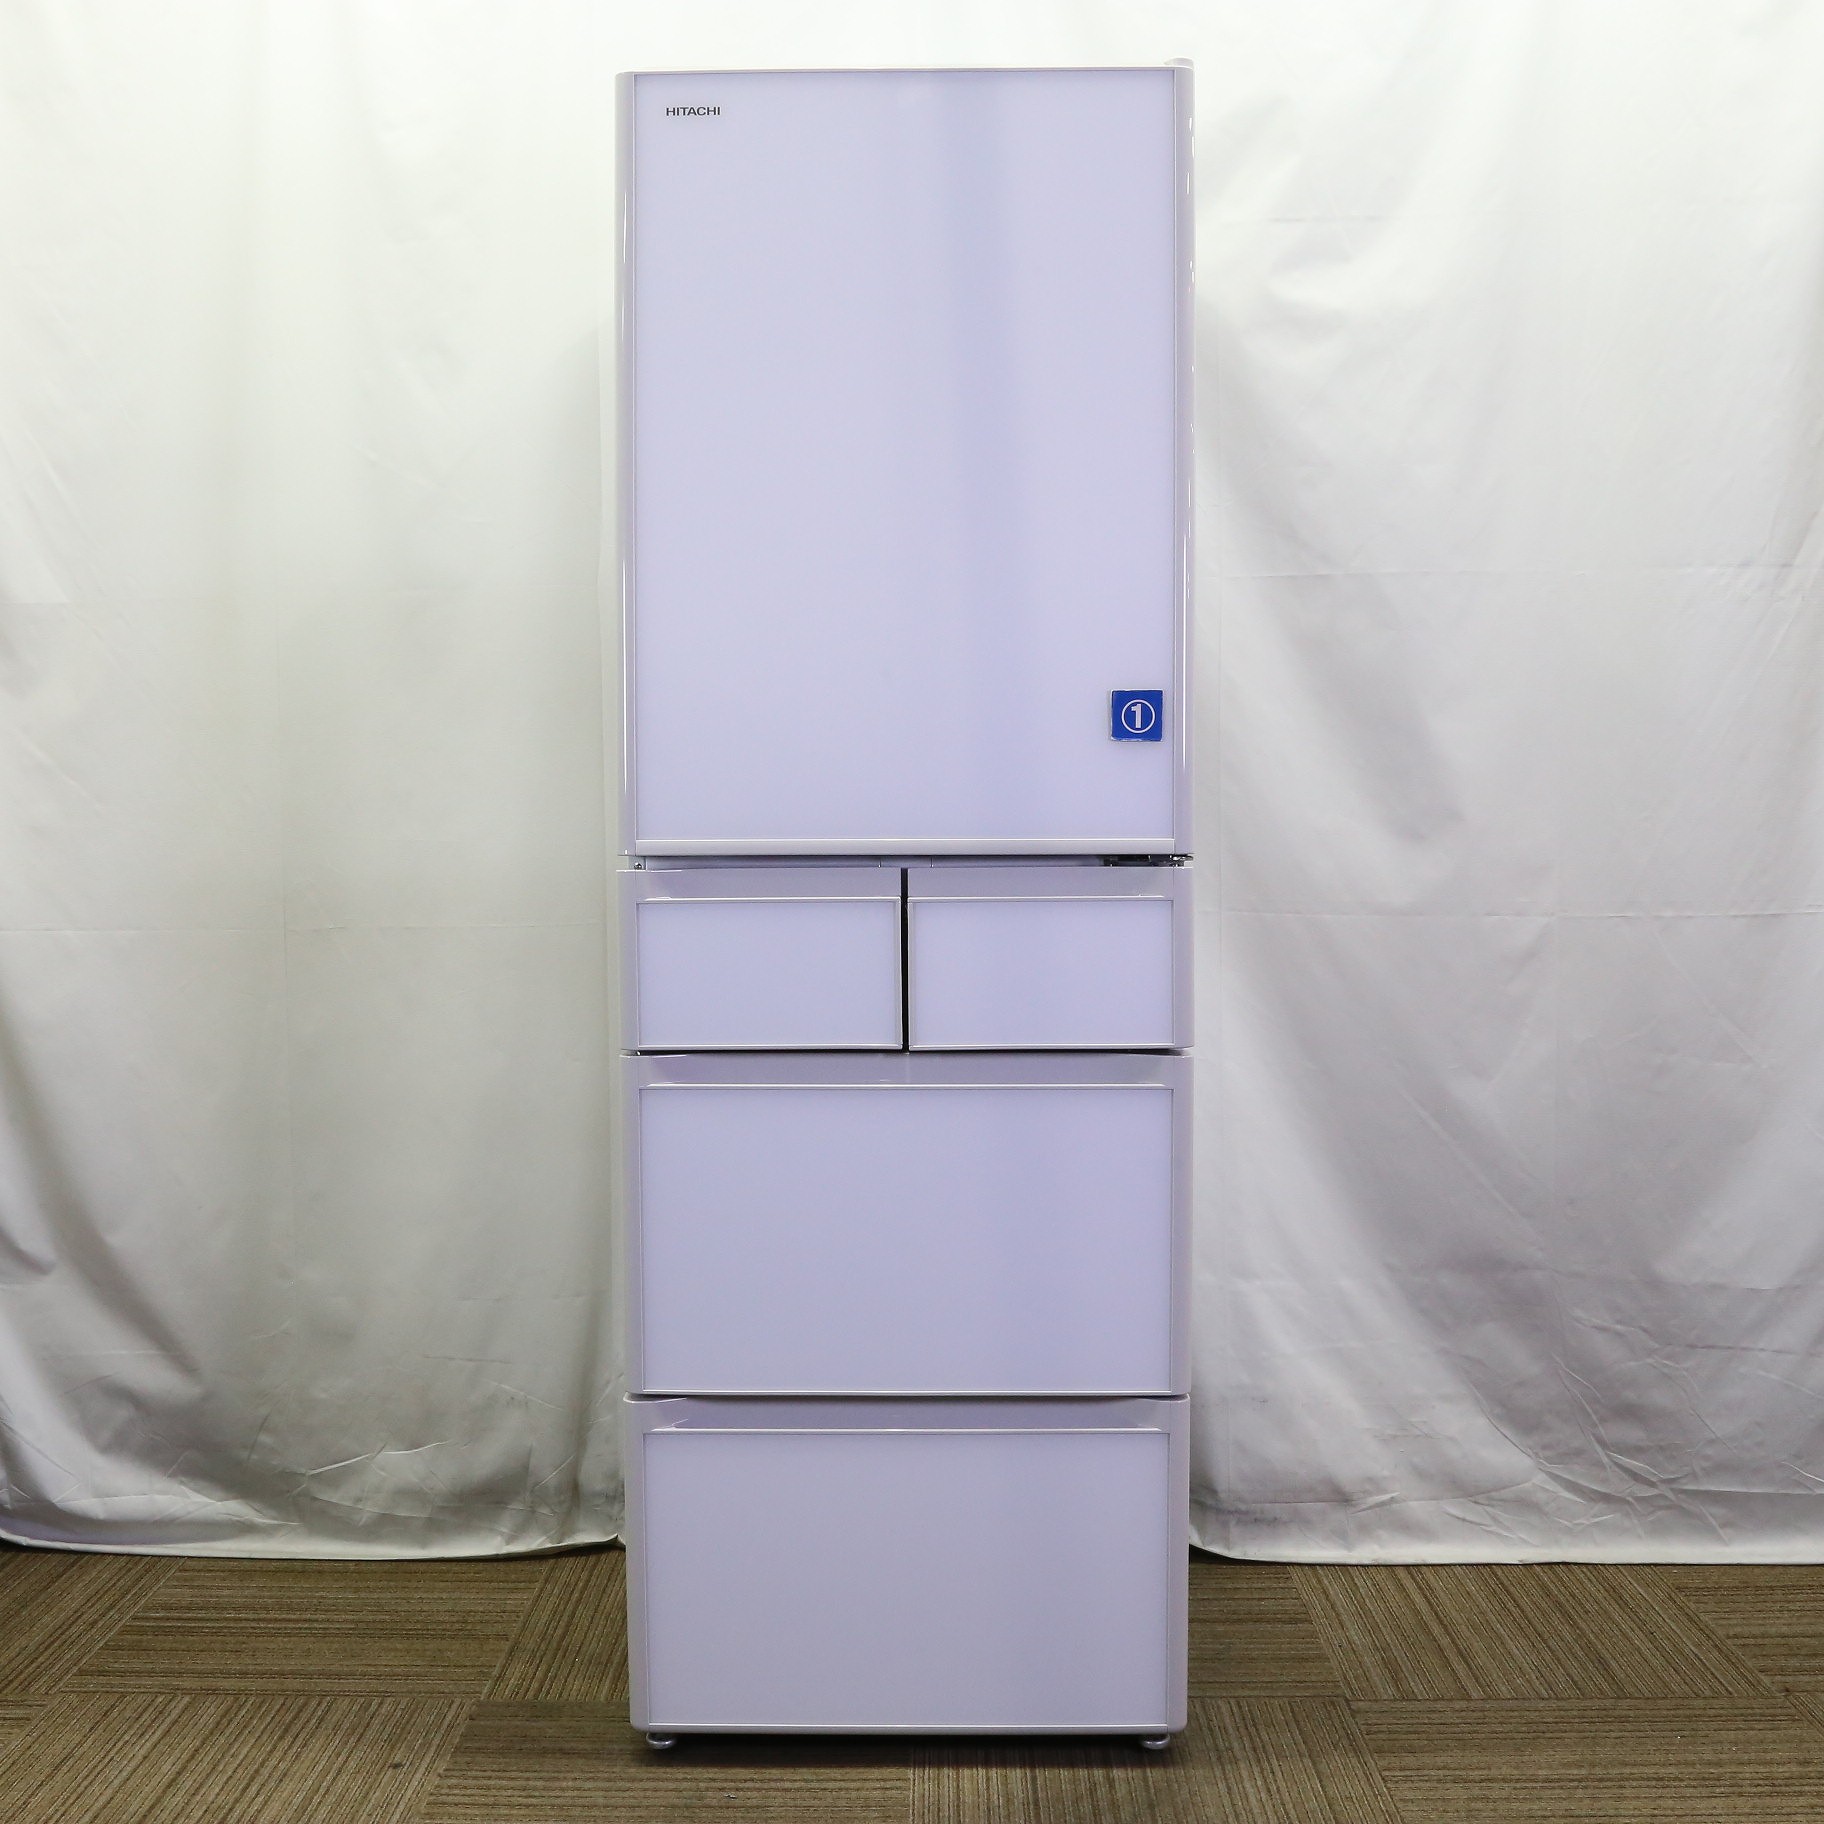 HITACHIの冷蔵庫(R-S40R)のご紹介です - キッチン家電